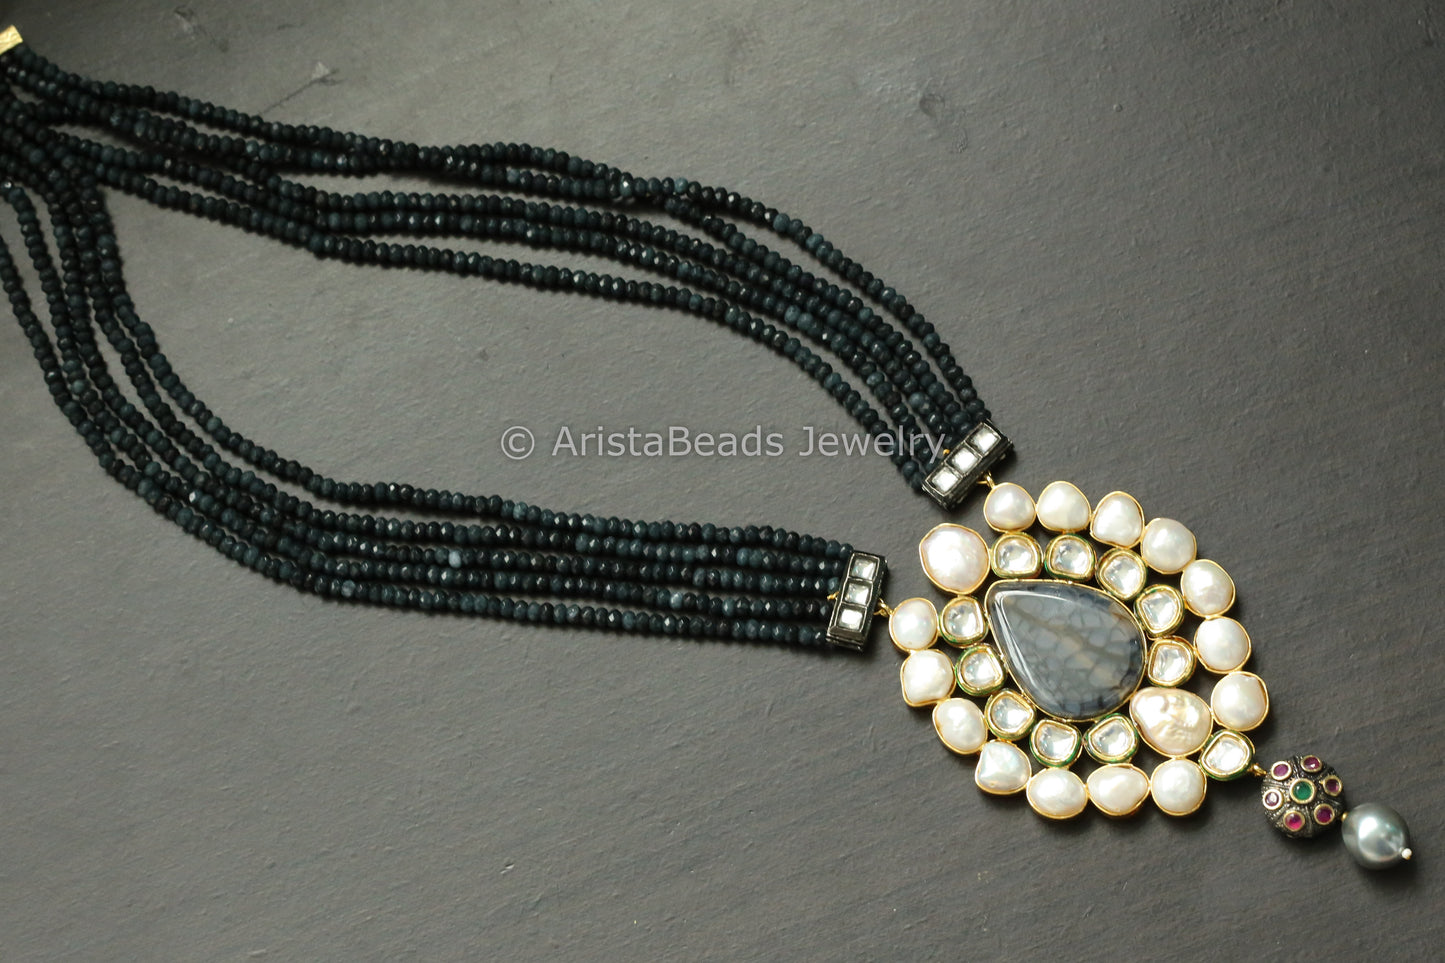 Kundan Baroque Pearls & Semiprecious Stone Necklace Set -Dark Gray